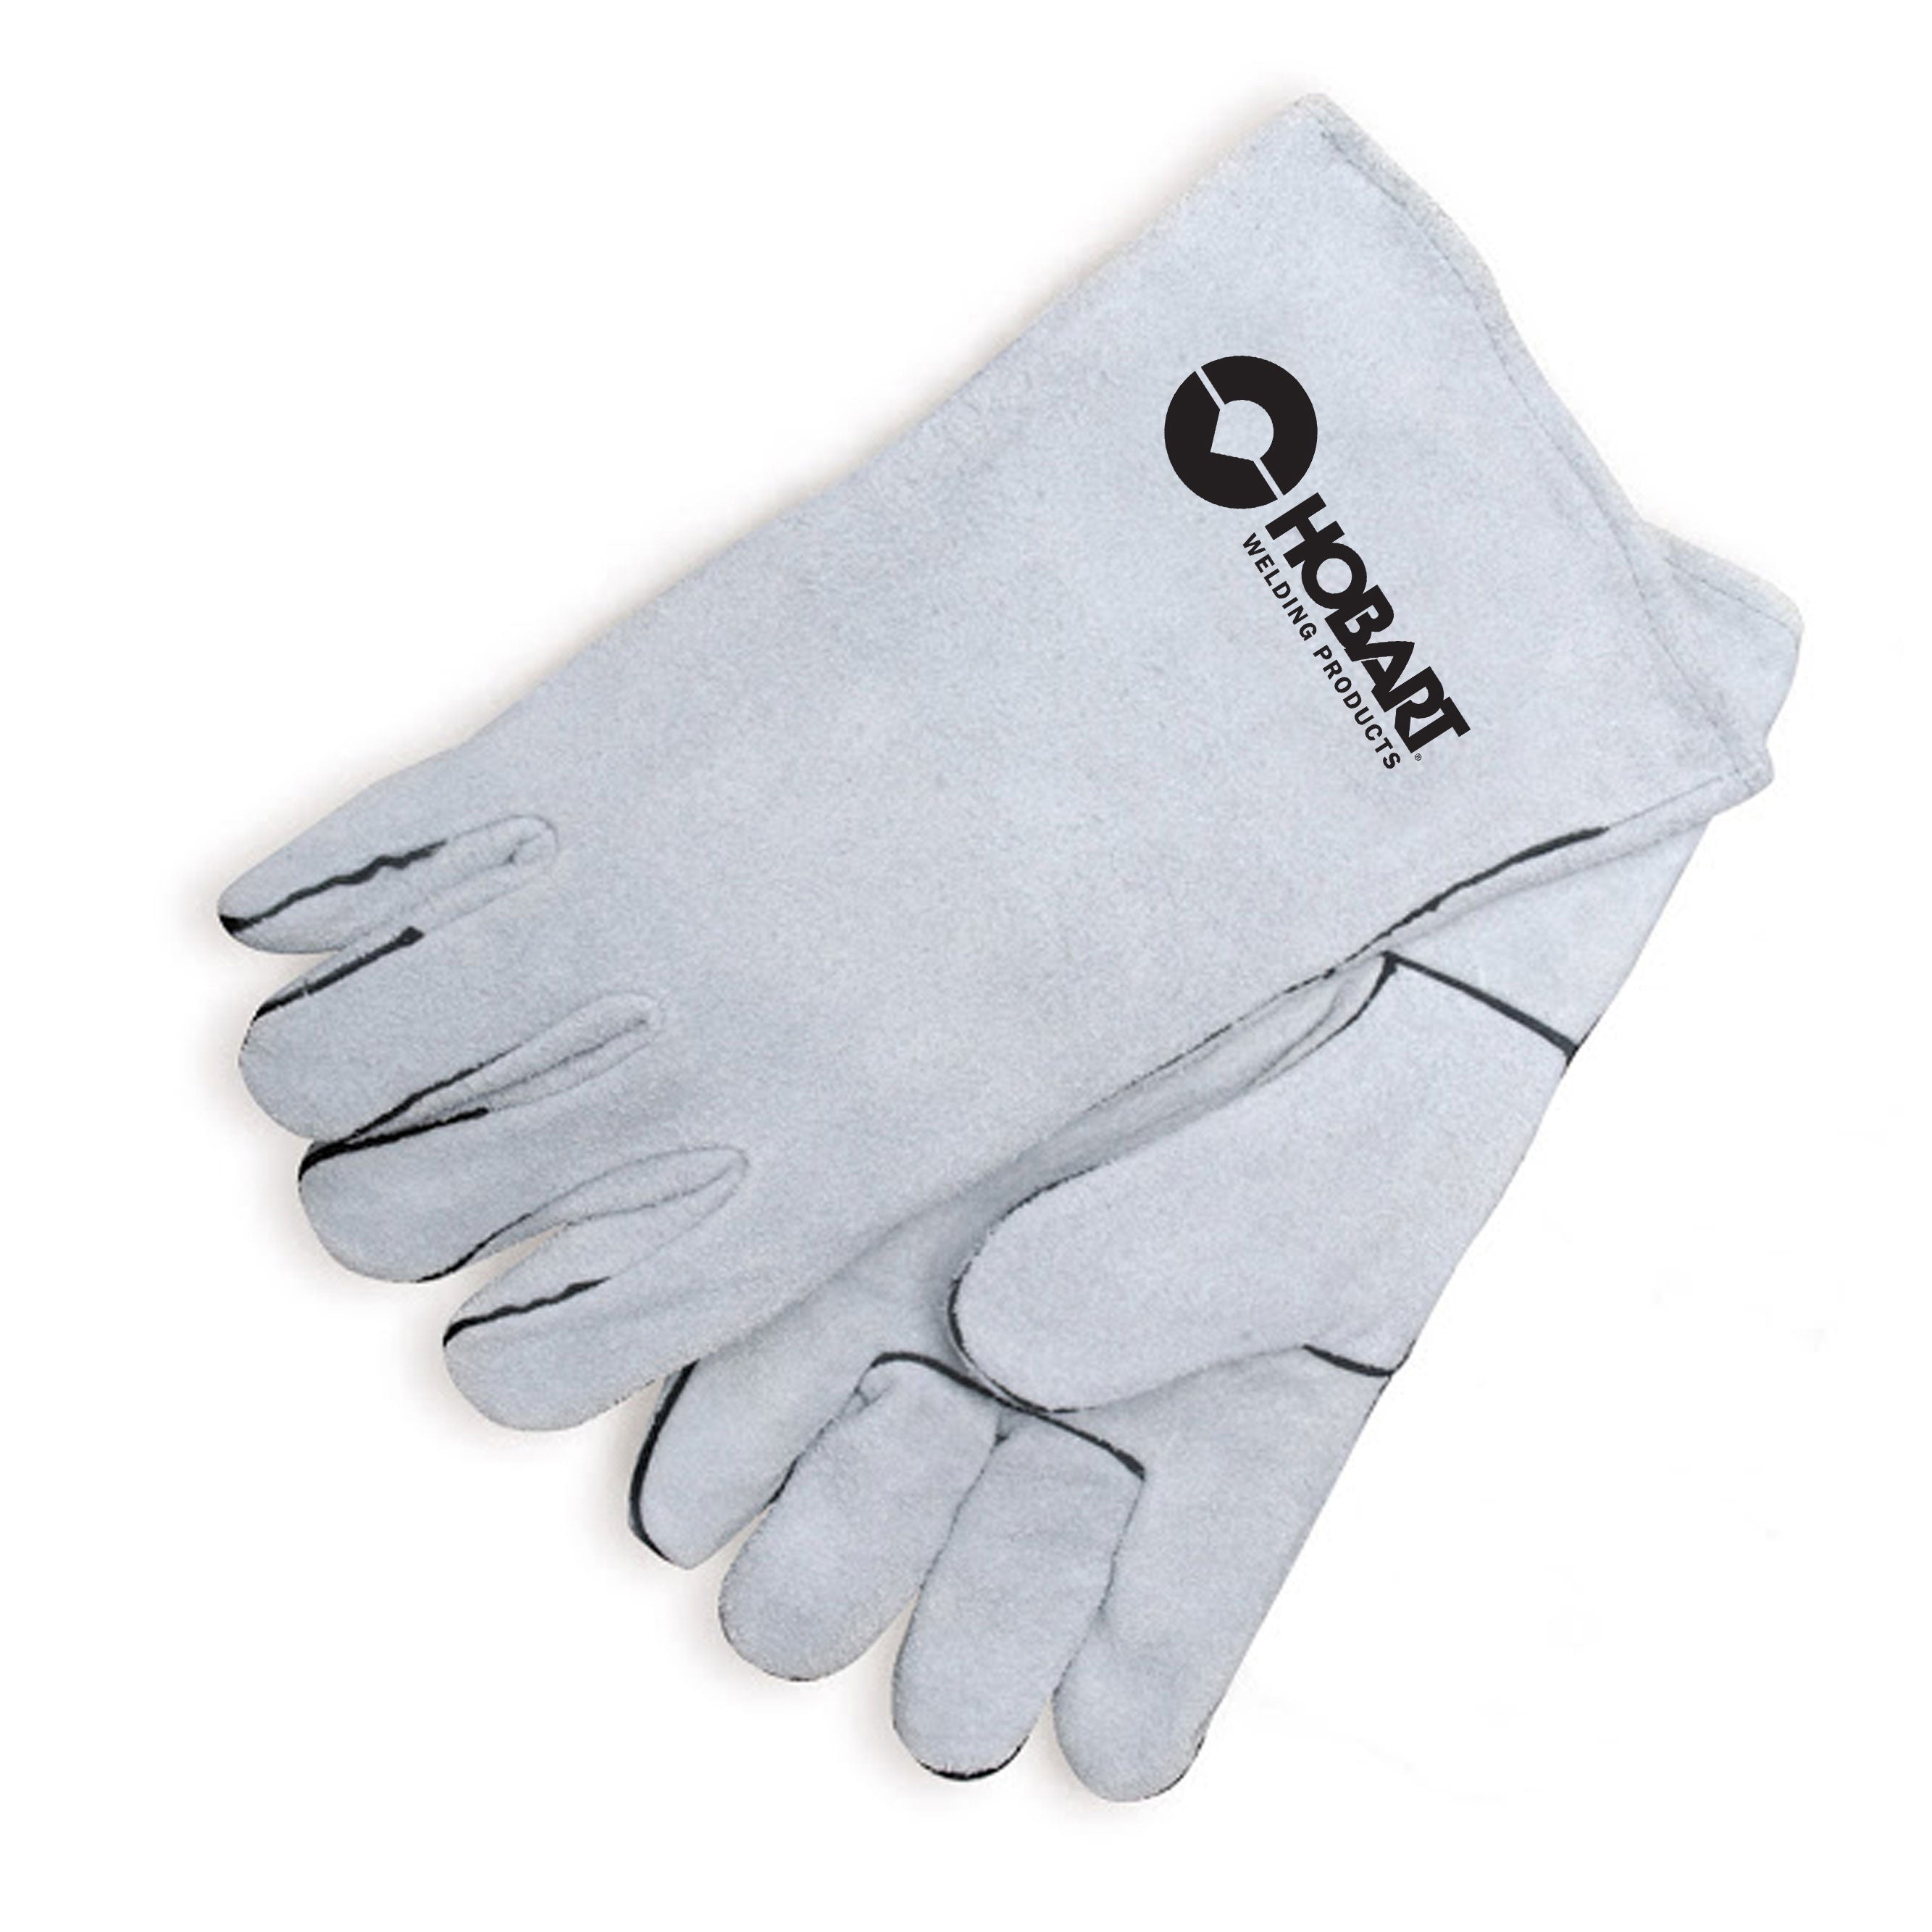 Hobart 770018 Economy Welding Gloves, Size X-Large